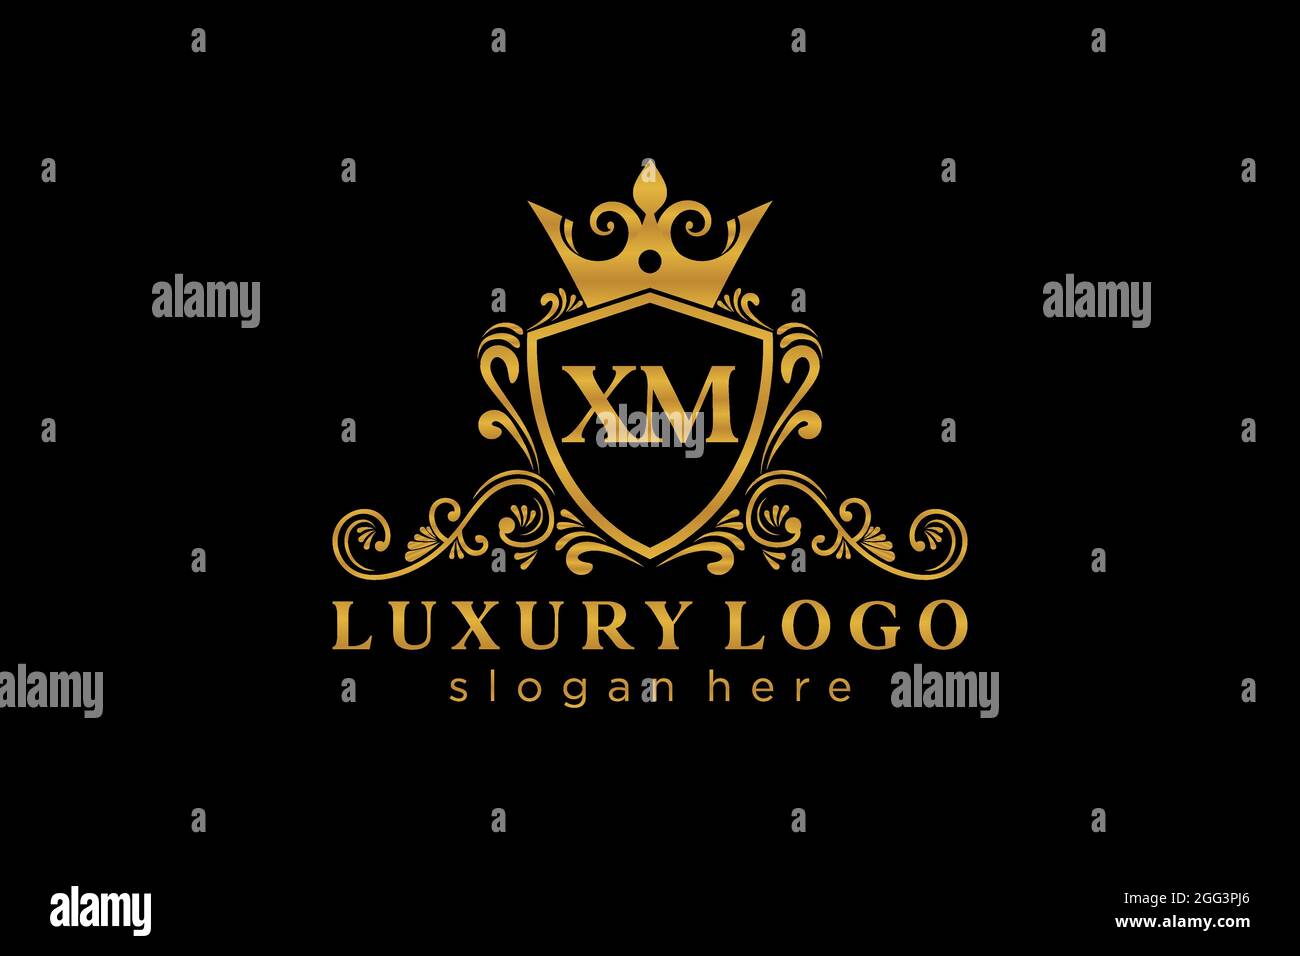 XM Letter Royal Luxury Logo Vorlage in Vektorgrafik für Restaurant, Royalty, Boutique, Cafe, Hotel, Heraldisch, Schmuck, Mode und andere Vektor illustrr Stock Vektor